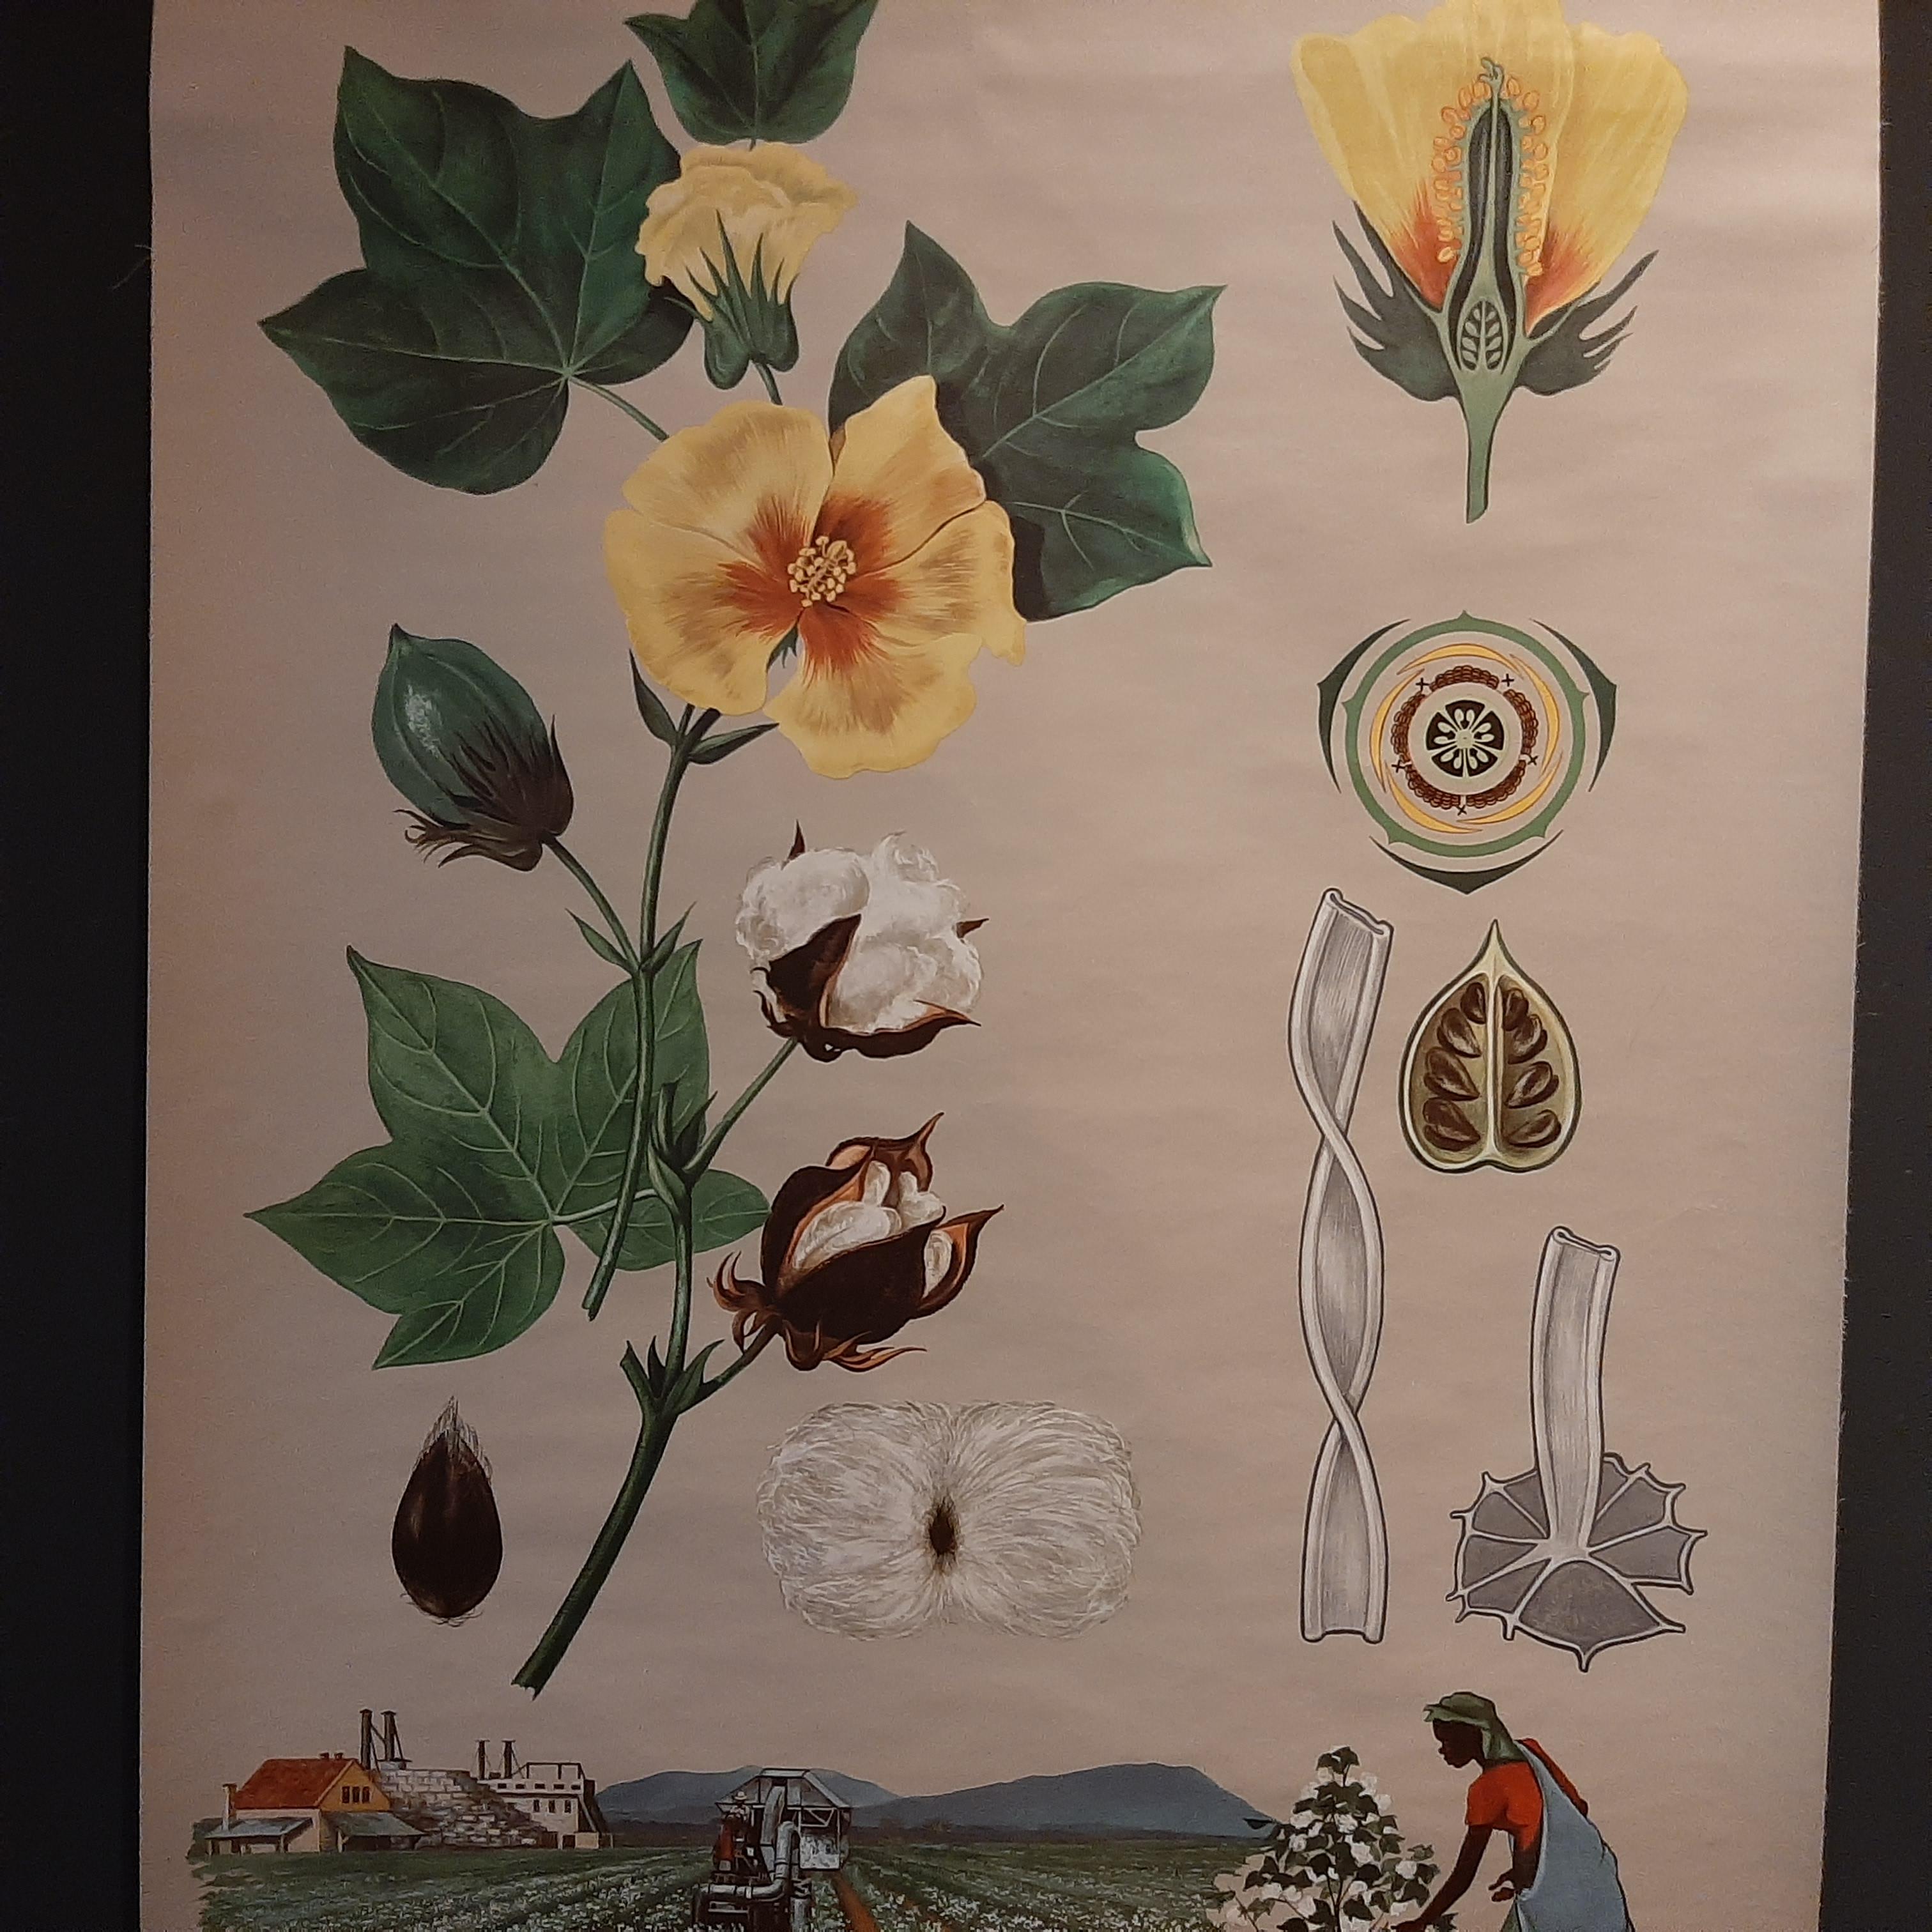 Die alte Botanik-Wandtafel einer Baumwollpflanze und des Baumwollanbaus von Jung, Koch und Quentell, die um 1960 veröffentlicht wurde, ist ein hervorragendes Beispiel für Lehrtafeln, die Mitte des 20. Jahrhunderts zu Unterrichtszwecken verwendet